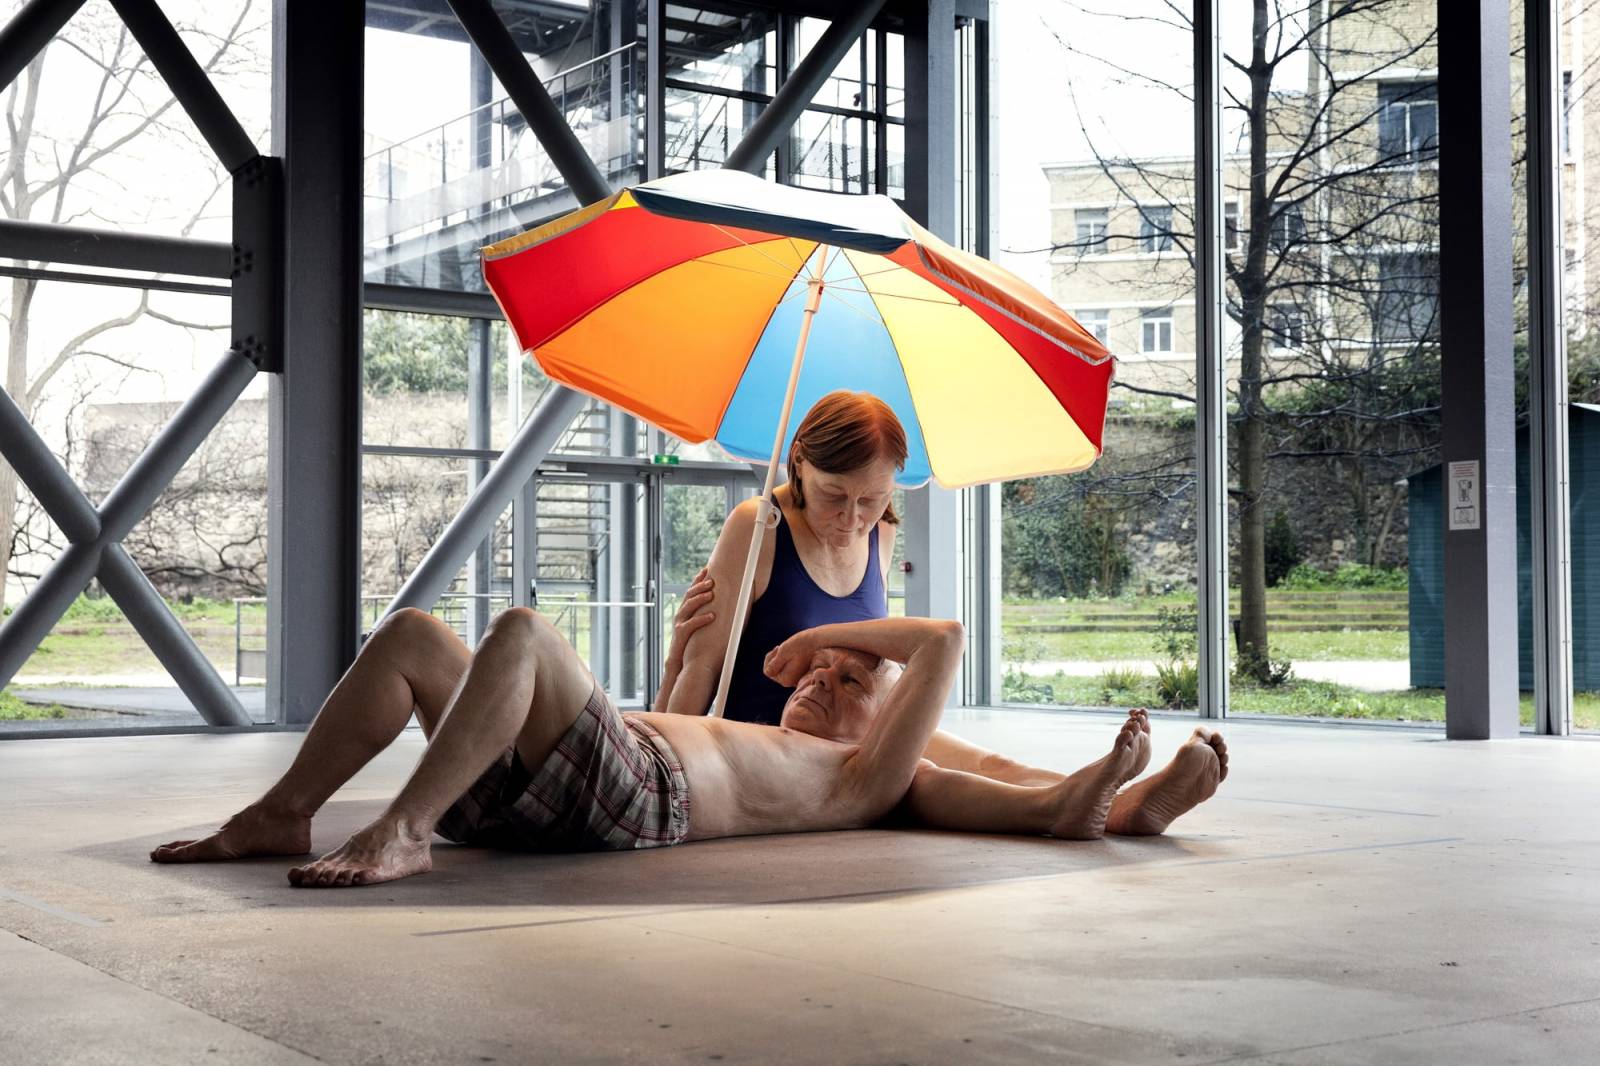 Ron Mueck, Couple under an umbrella, 2013 (© Ron Mueck, Collection Museum Voorlinden, fot. Antoine van Kaam)